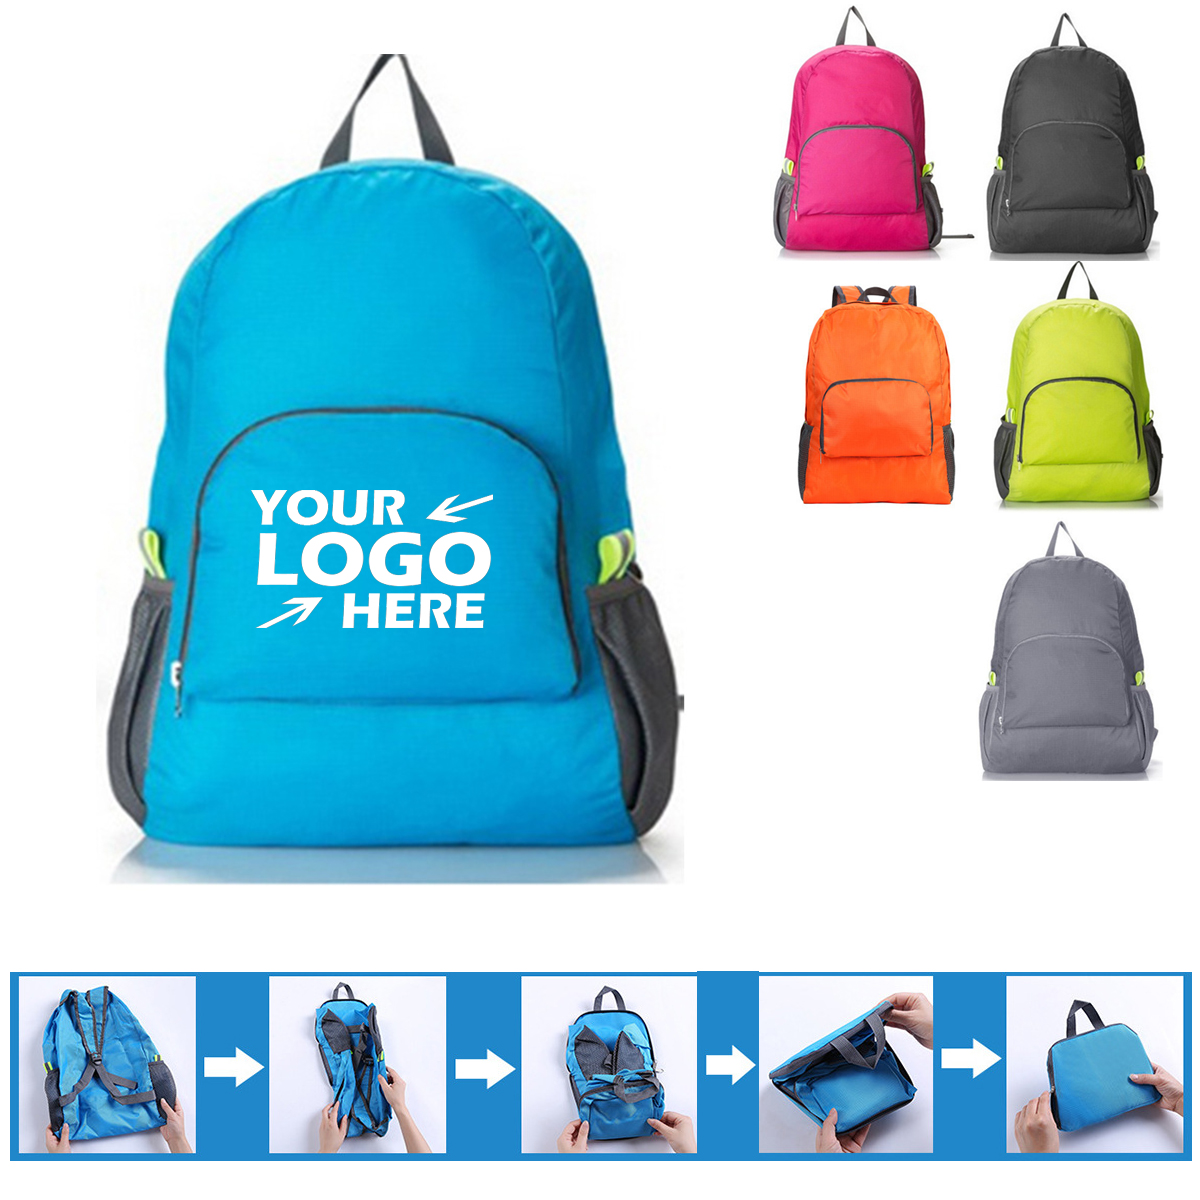 GL-SUH1035 Waterproof Foldable Backpack Travel Bags